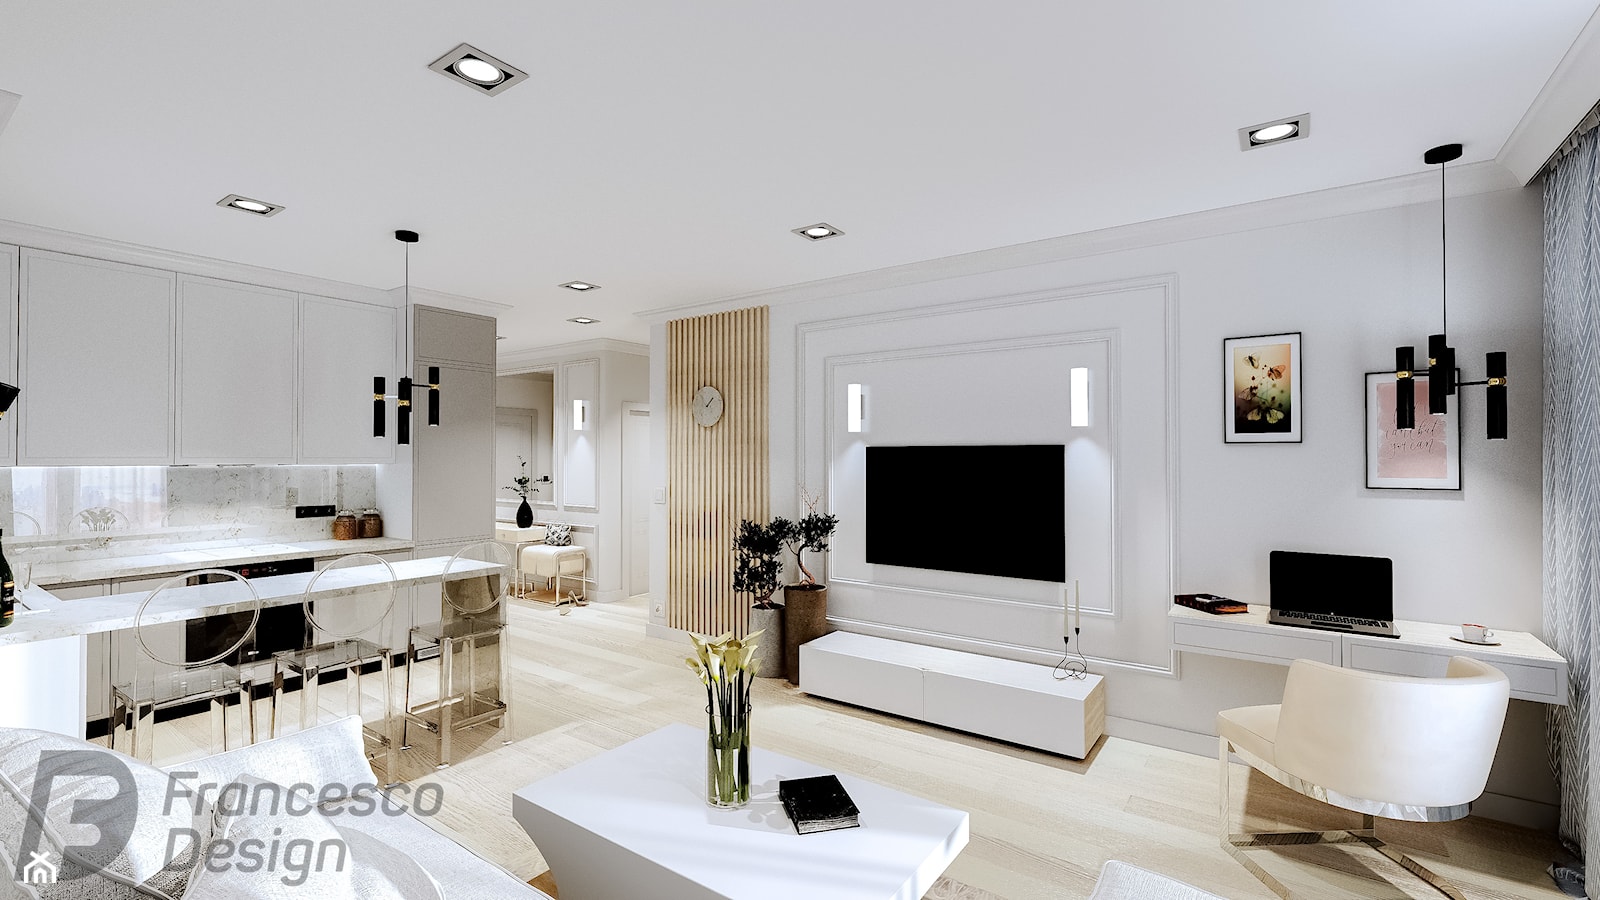 Apartament klasyczny w wersji szarej - zdjęcie od FRANCESCO DESIGN - Homebook